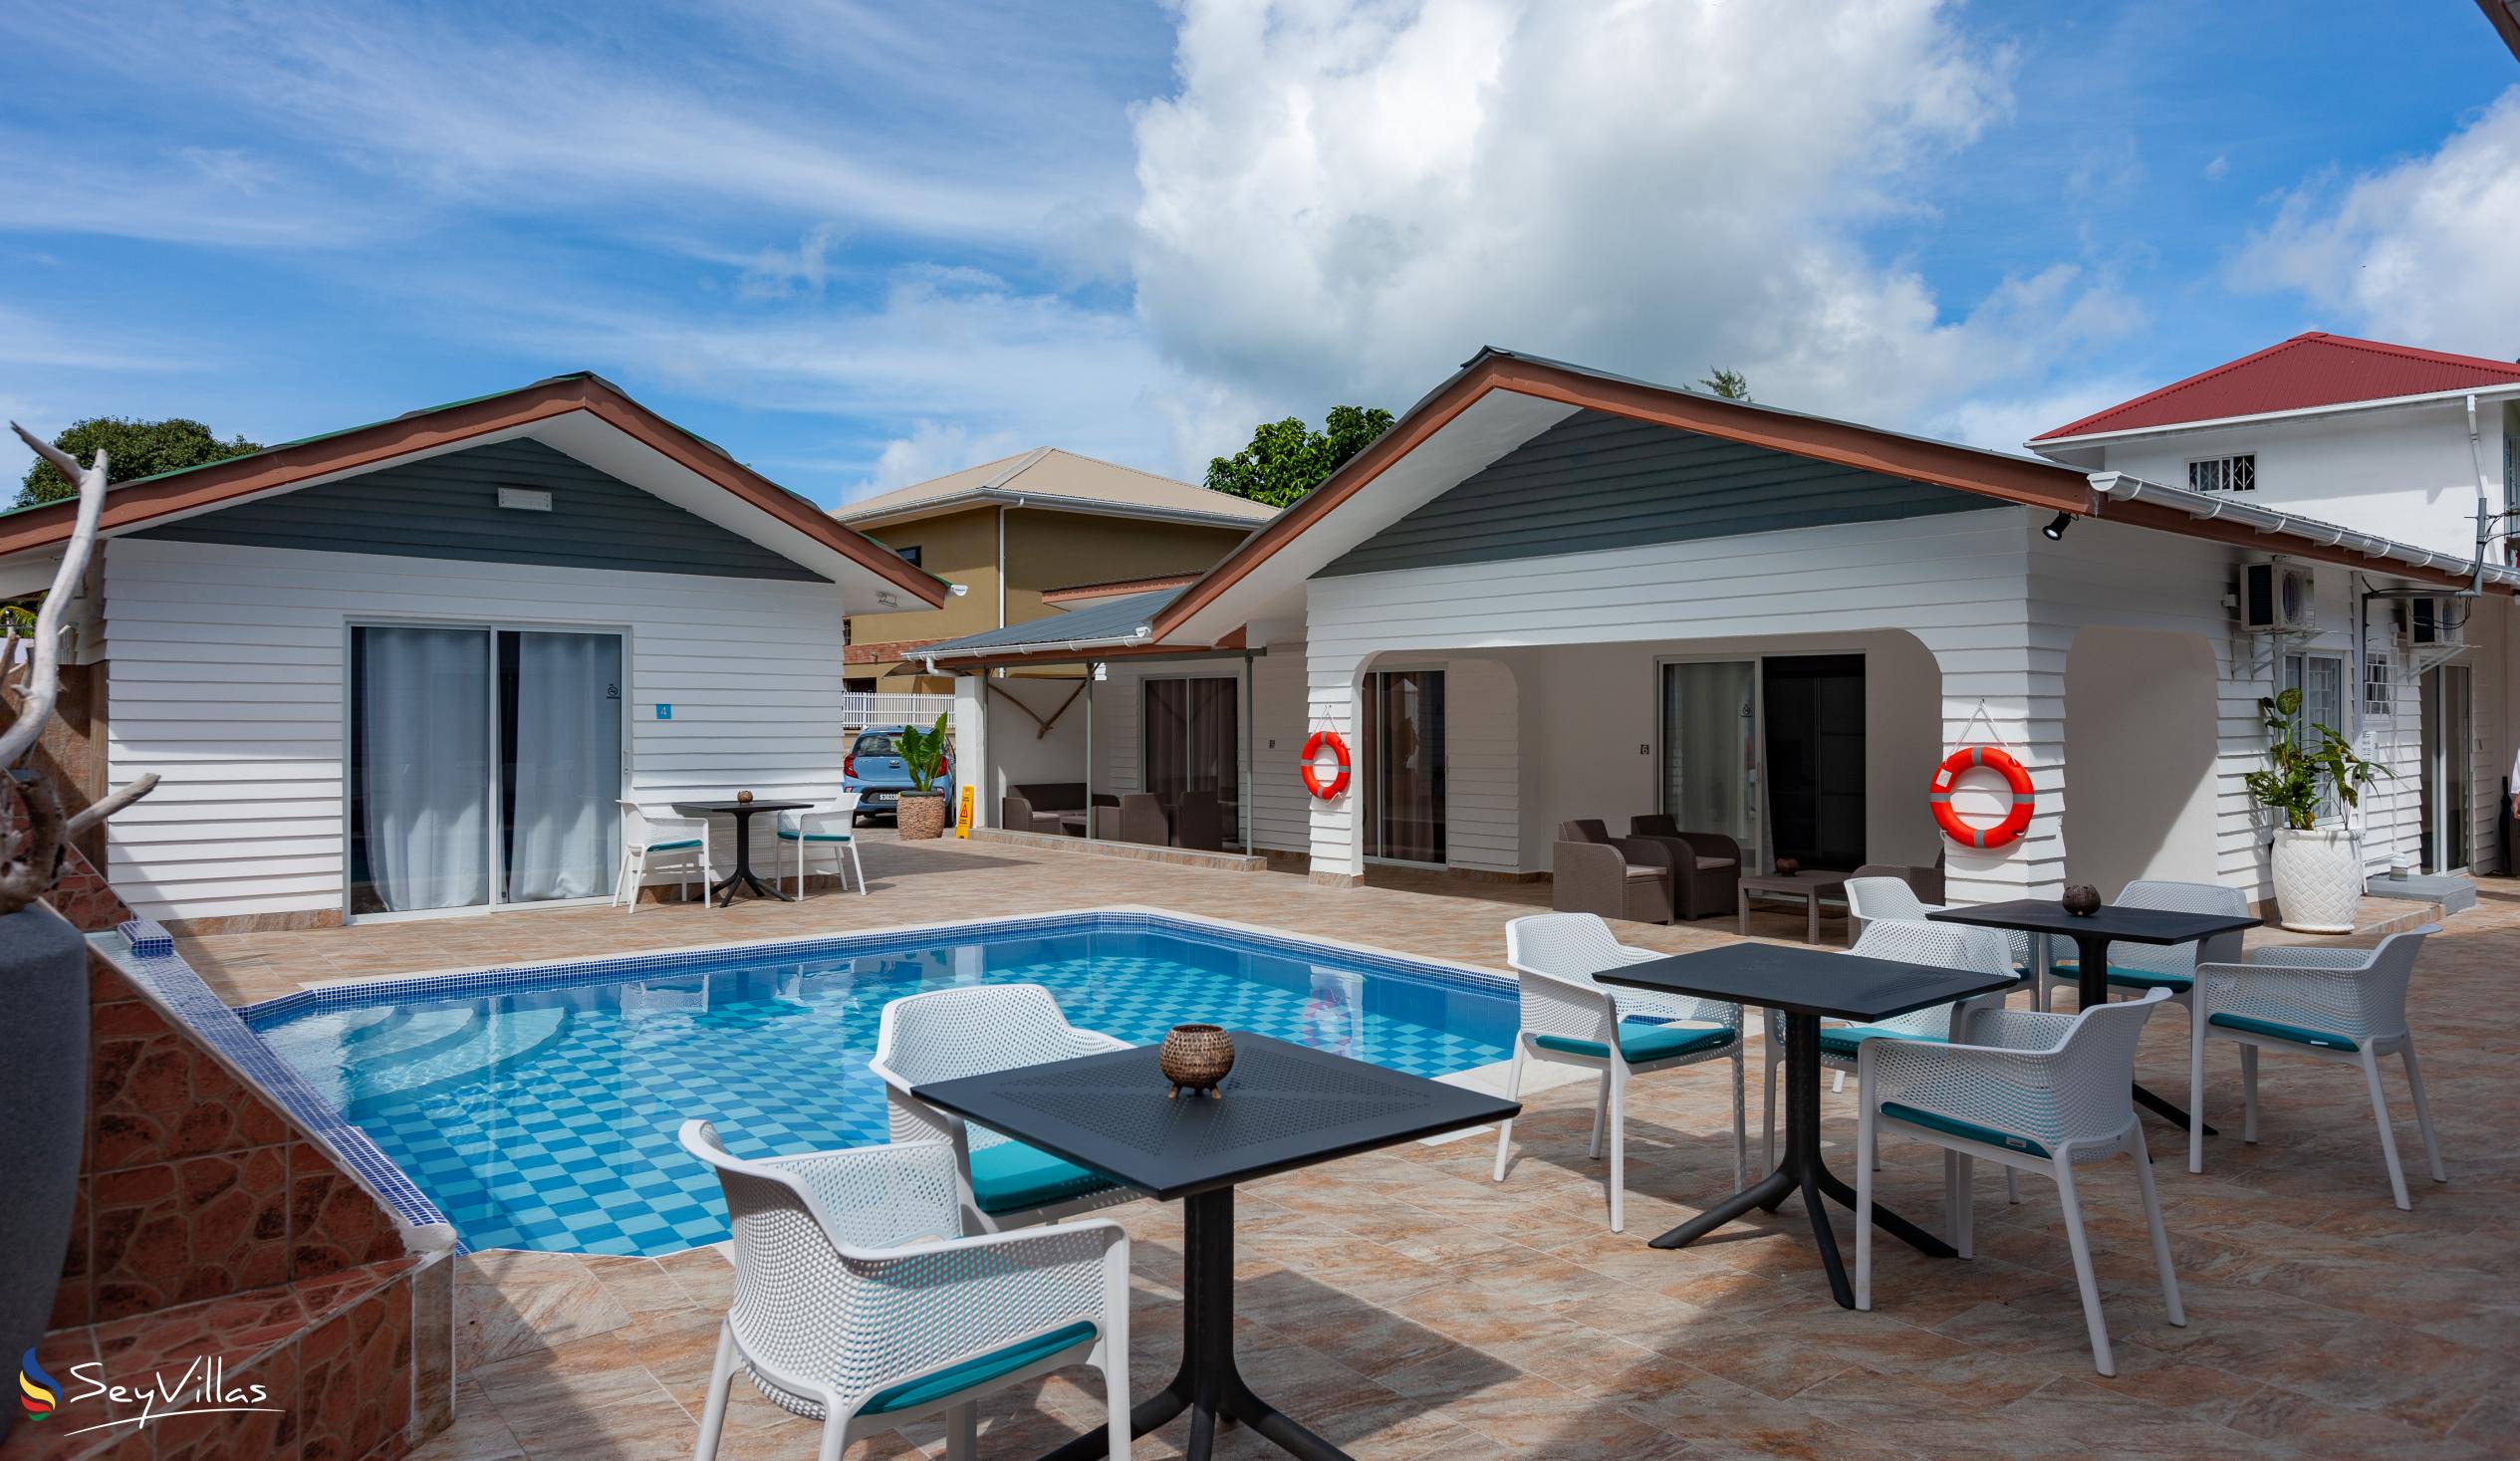 Foto 9: Hotel Plein Soleil - Aussenbereich - Praslin (Seychellen)